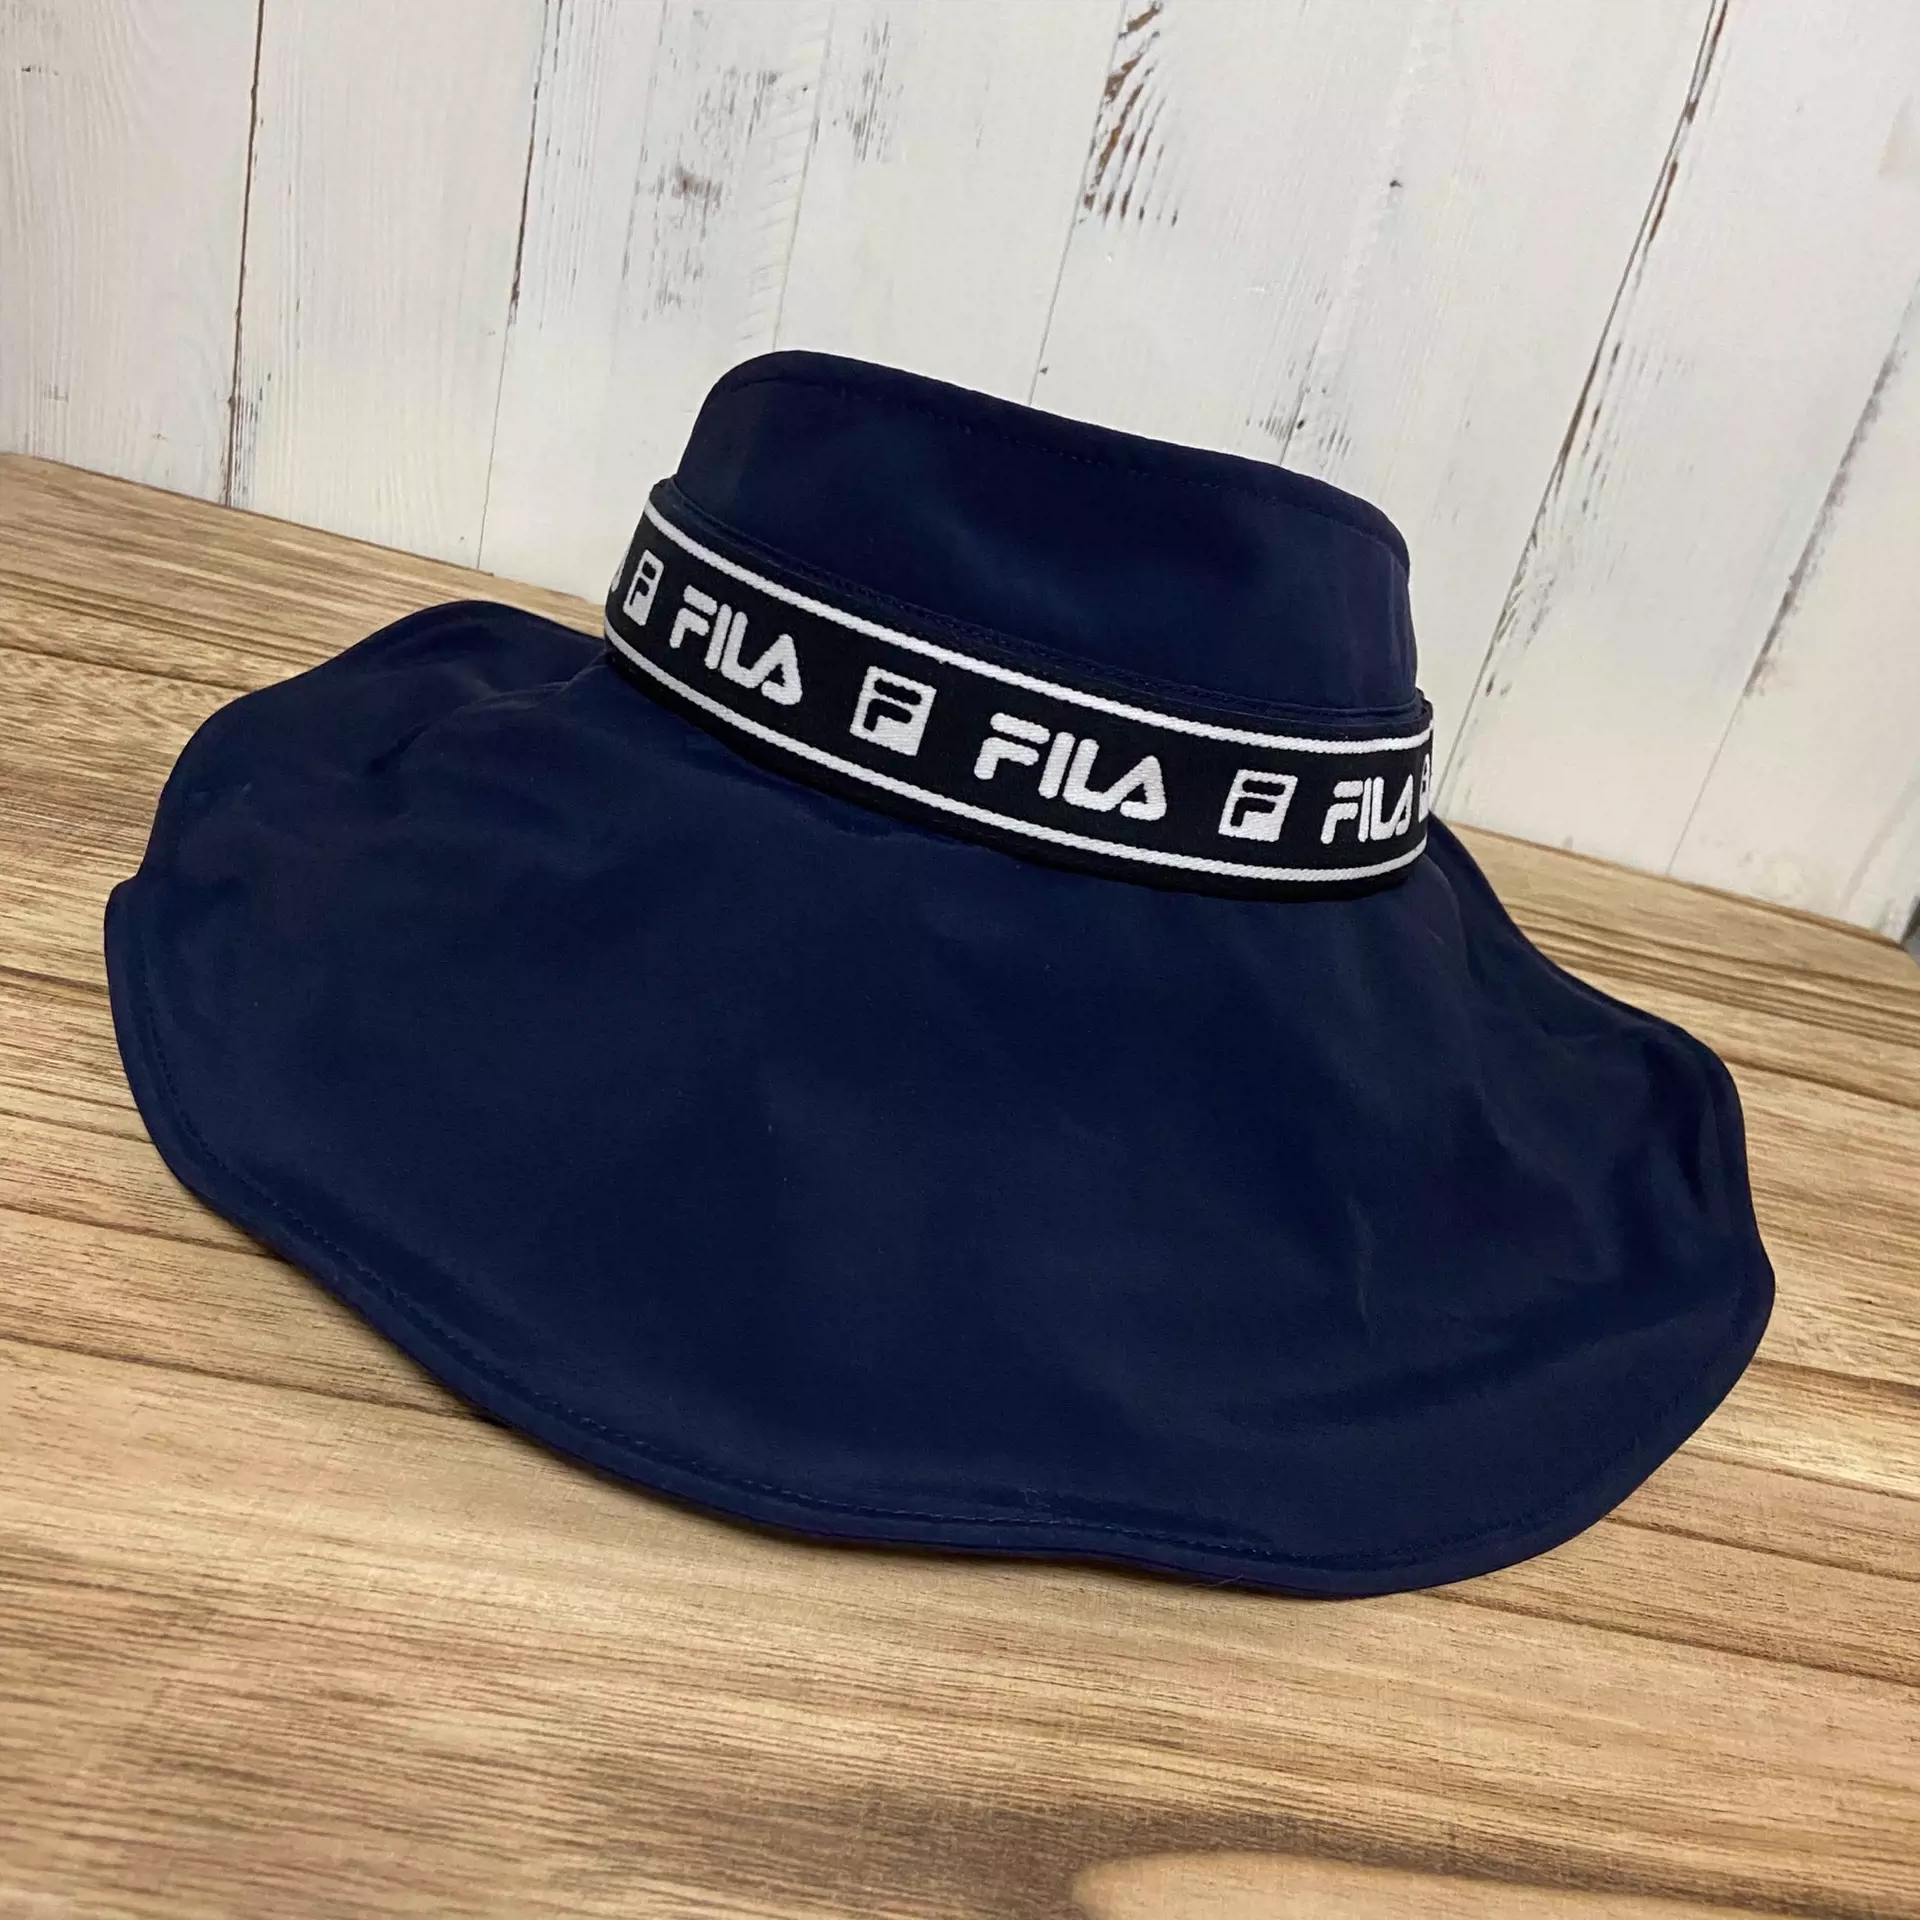 Fila女款高尔夫空顶帽子斐乐golf运动遮阳帽藏蓝色-Taobao